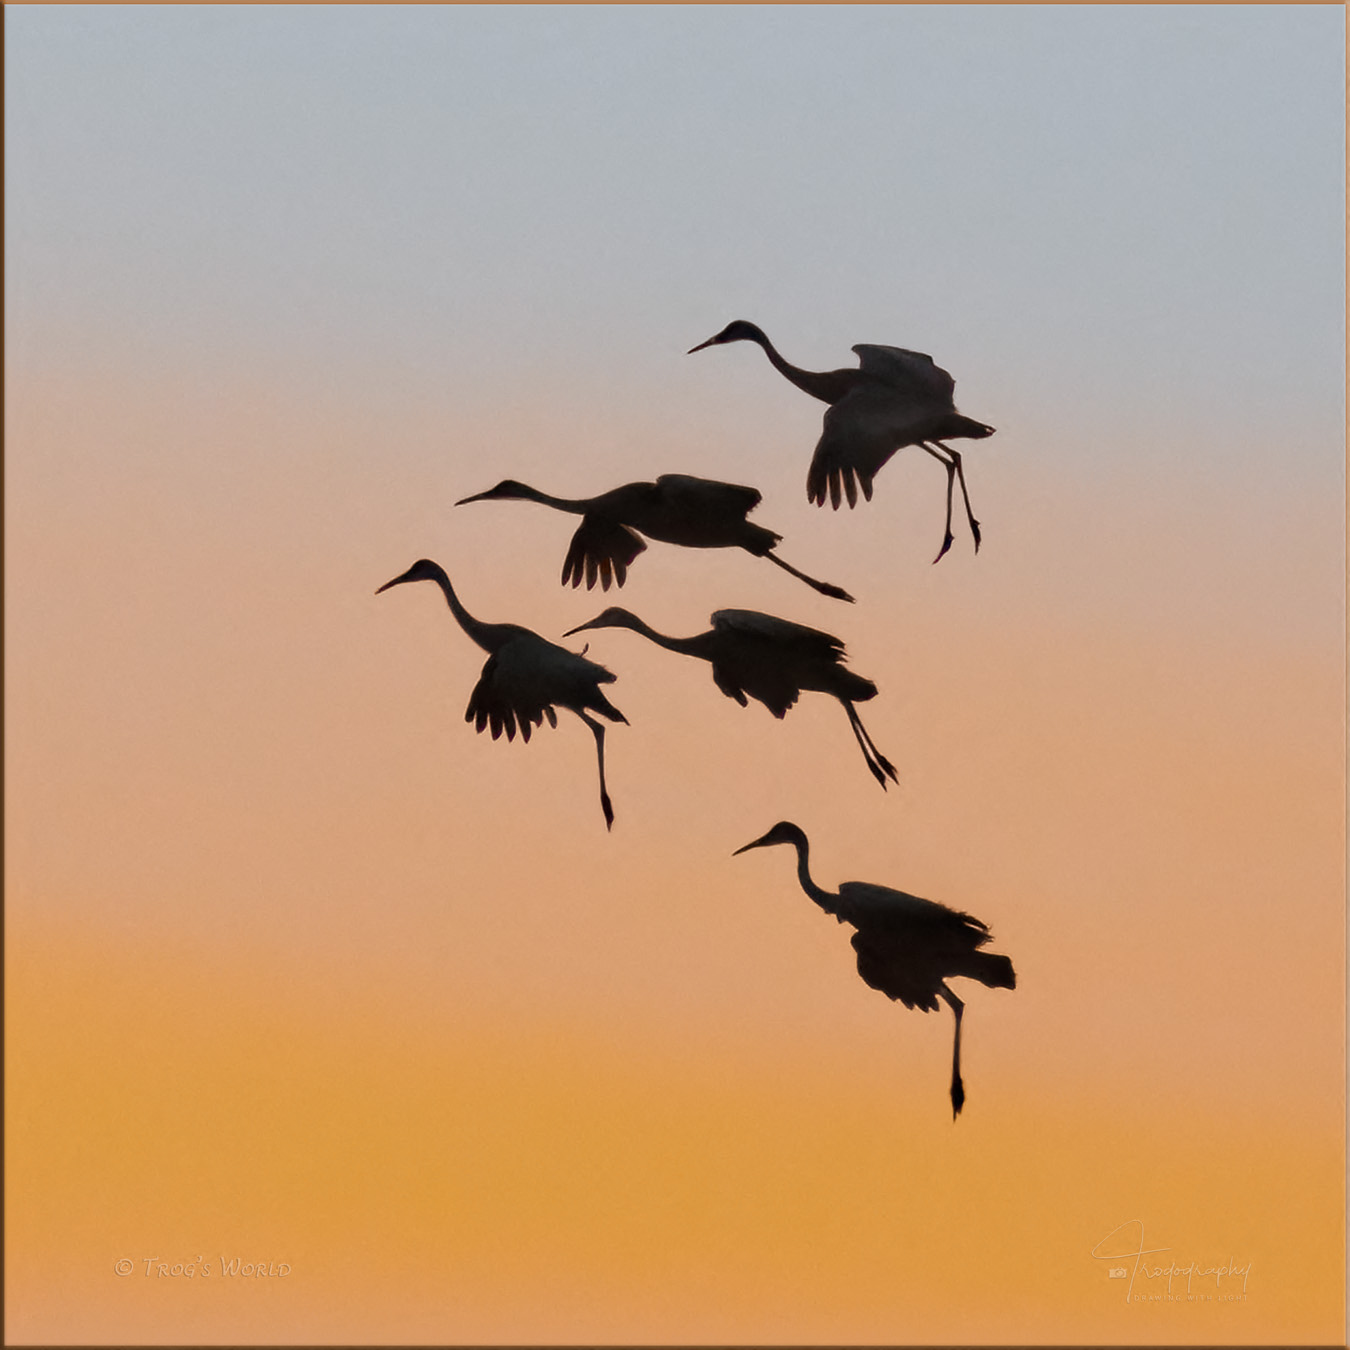 Sandhill Cranes landing against the sunset sky